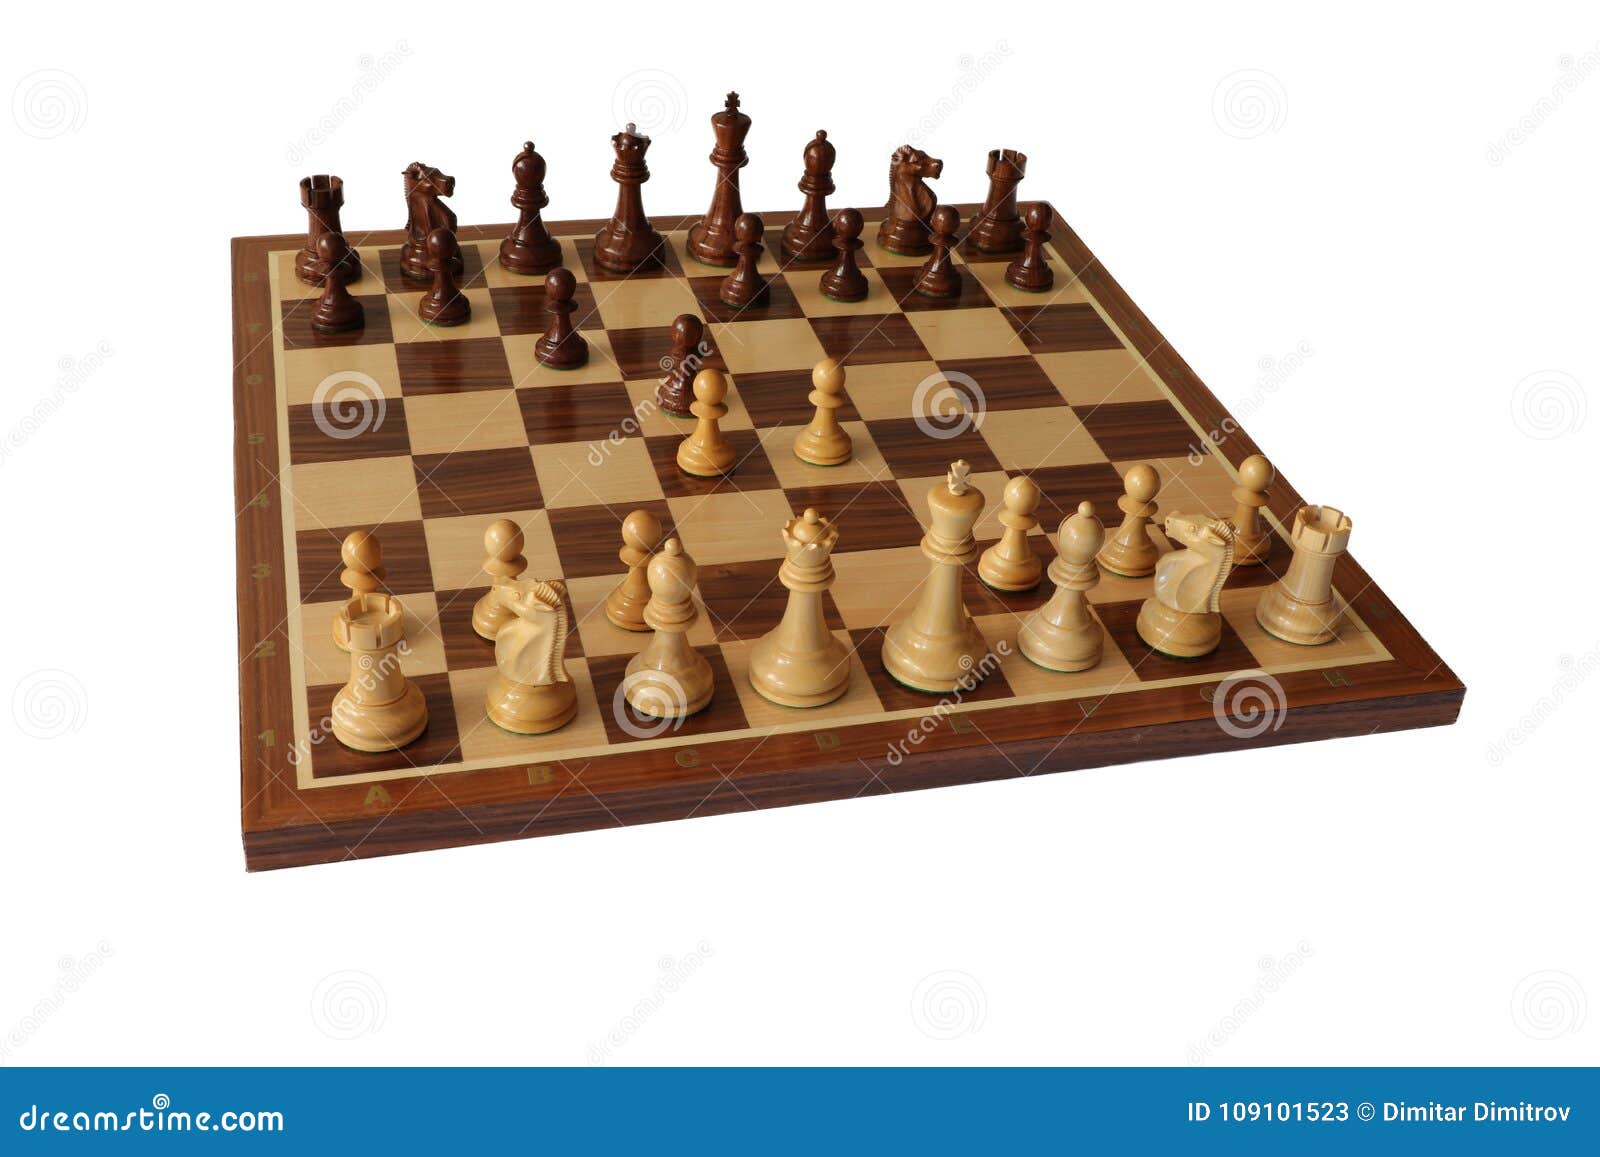 Caro-Kann Defense - Chess Openings 